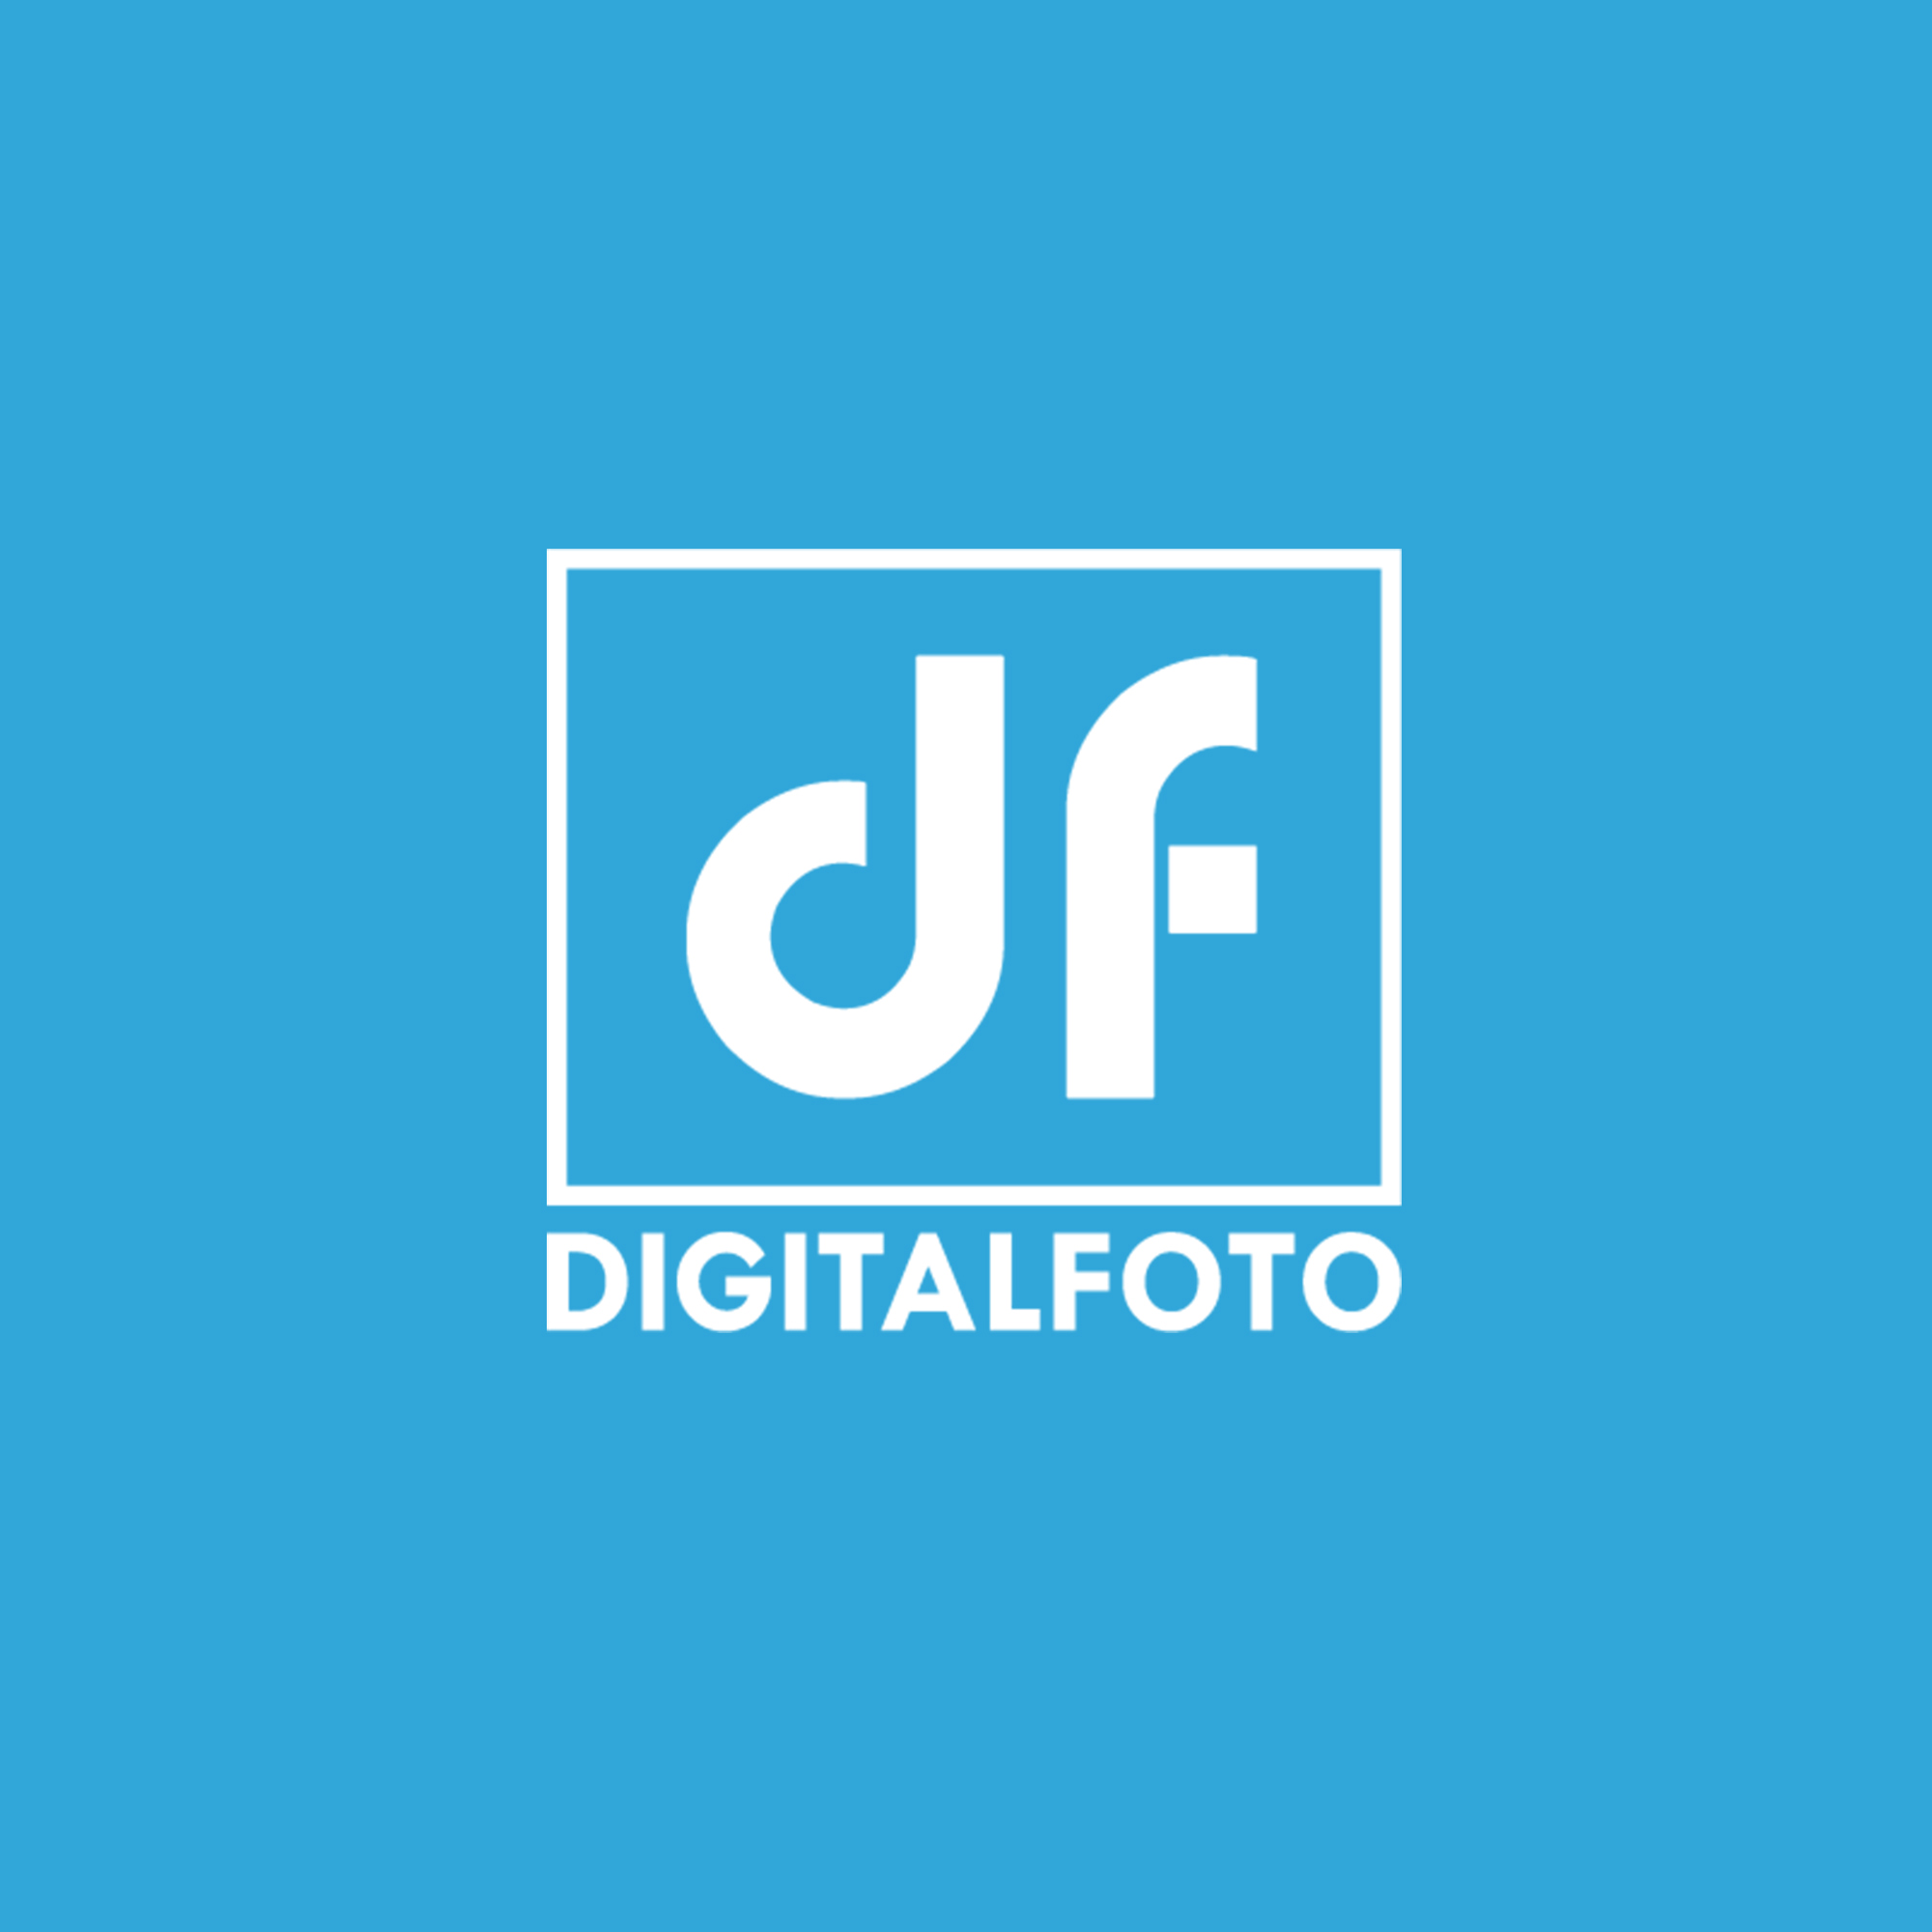 DigitalFoto Solution Limited